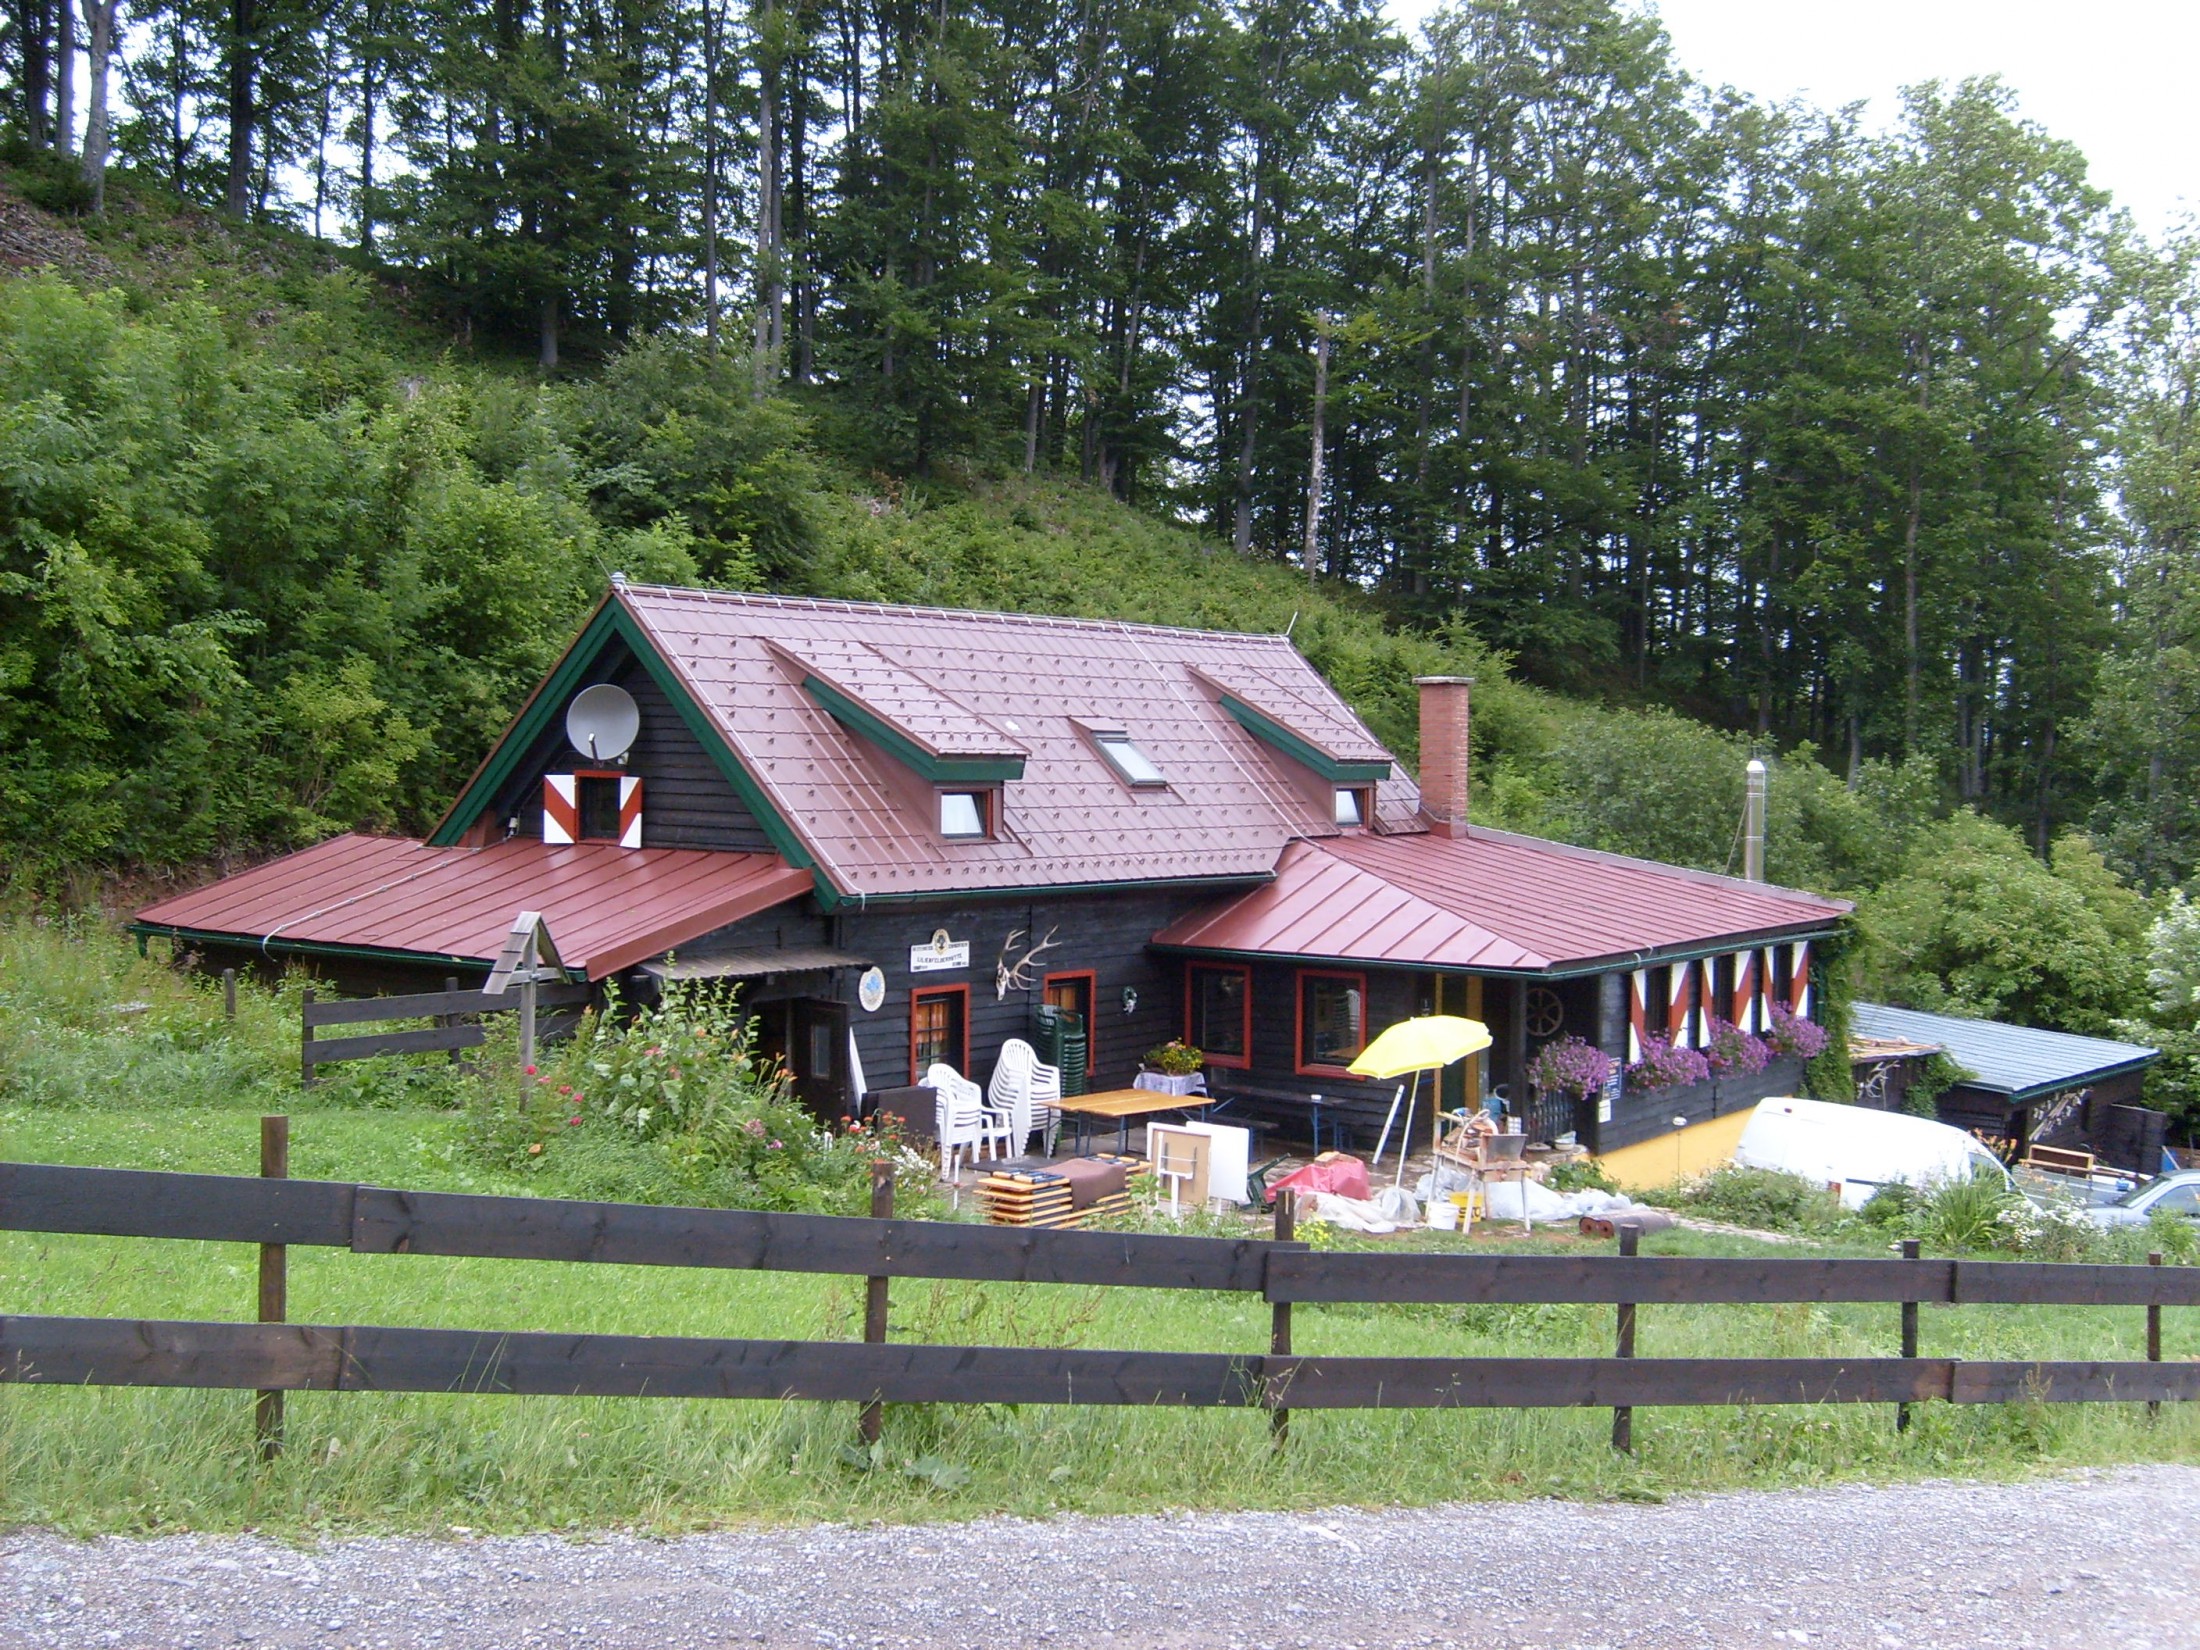 Lilienfelder Hütte